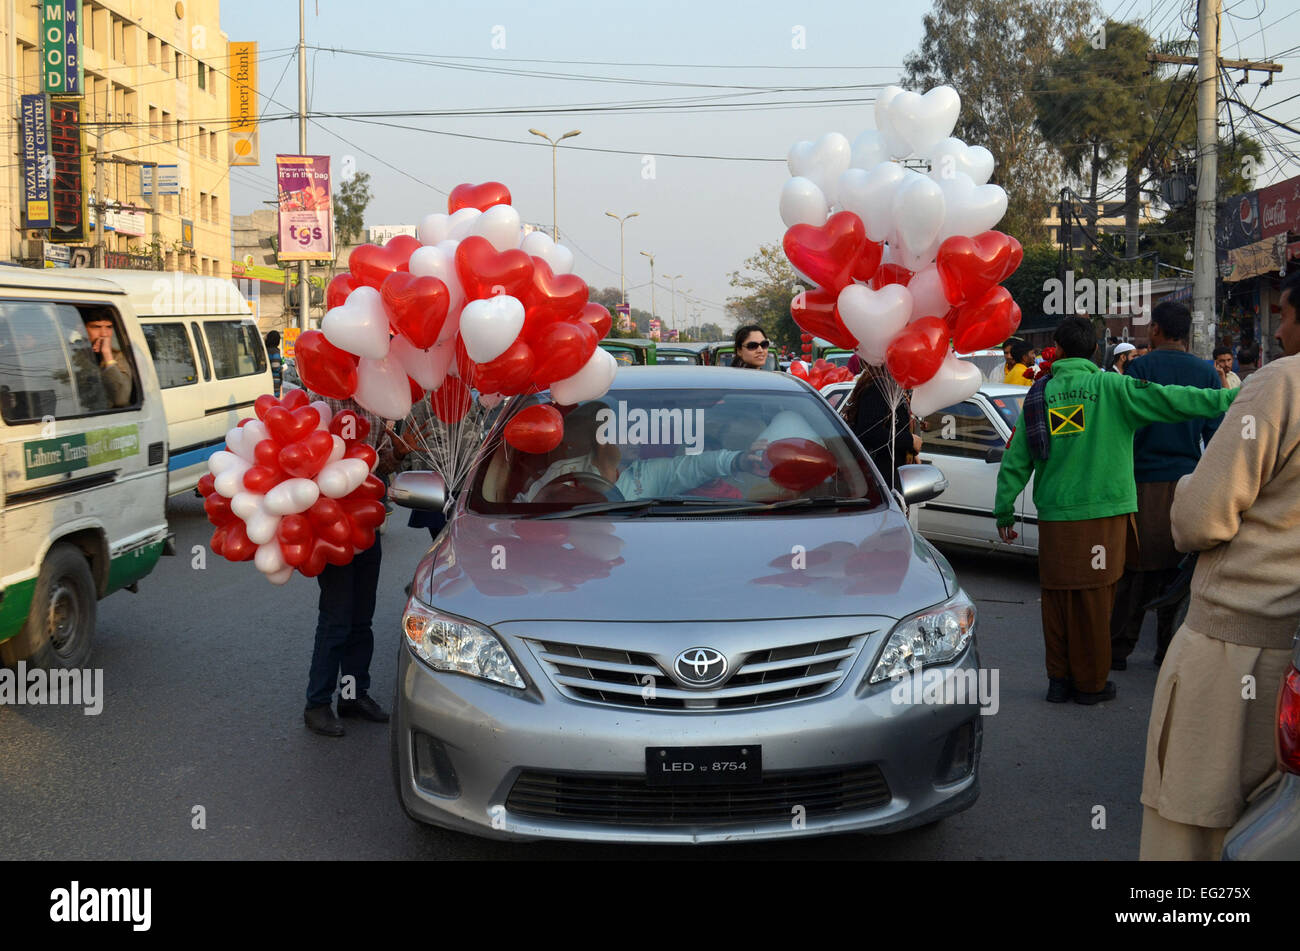 Lahore. Feb 14, 2015. Ballons en forme de cœur sont liés à une voiture le jour de la Saint-Valentin dans l'est du Pakistan, Lahore, 14 février 2015. © Jamil Ahmed/Xinhua/Alamy Live News Banque D'Images